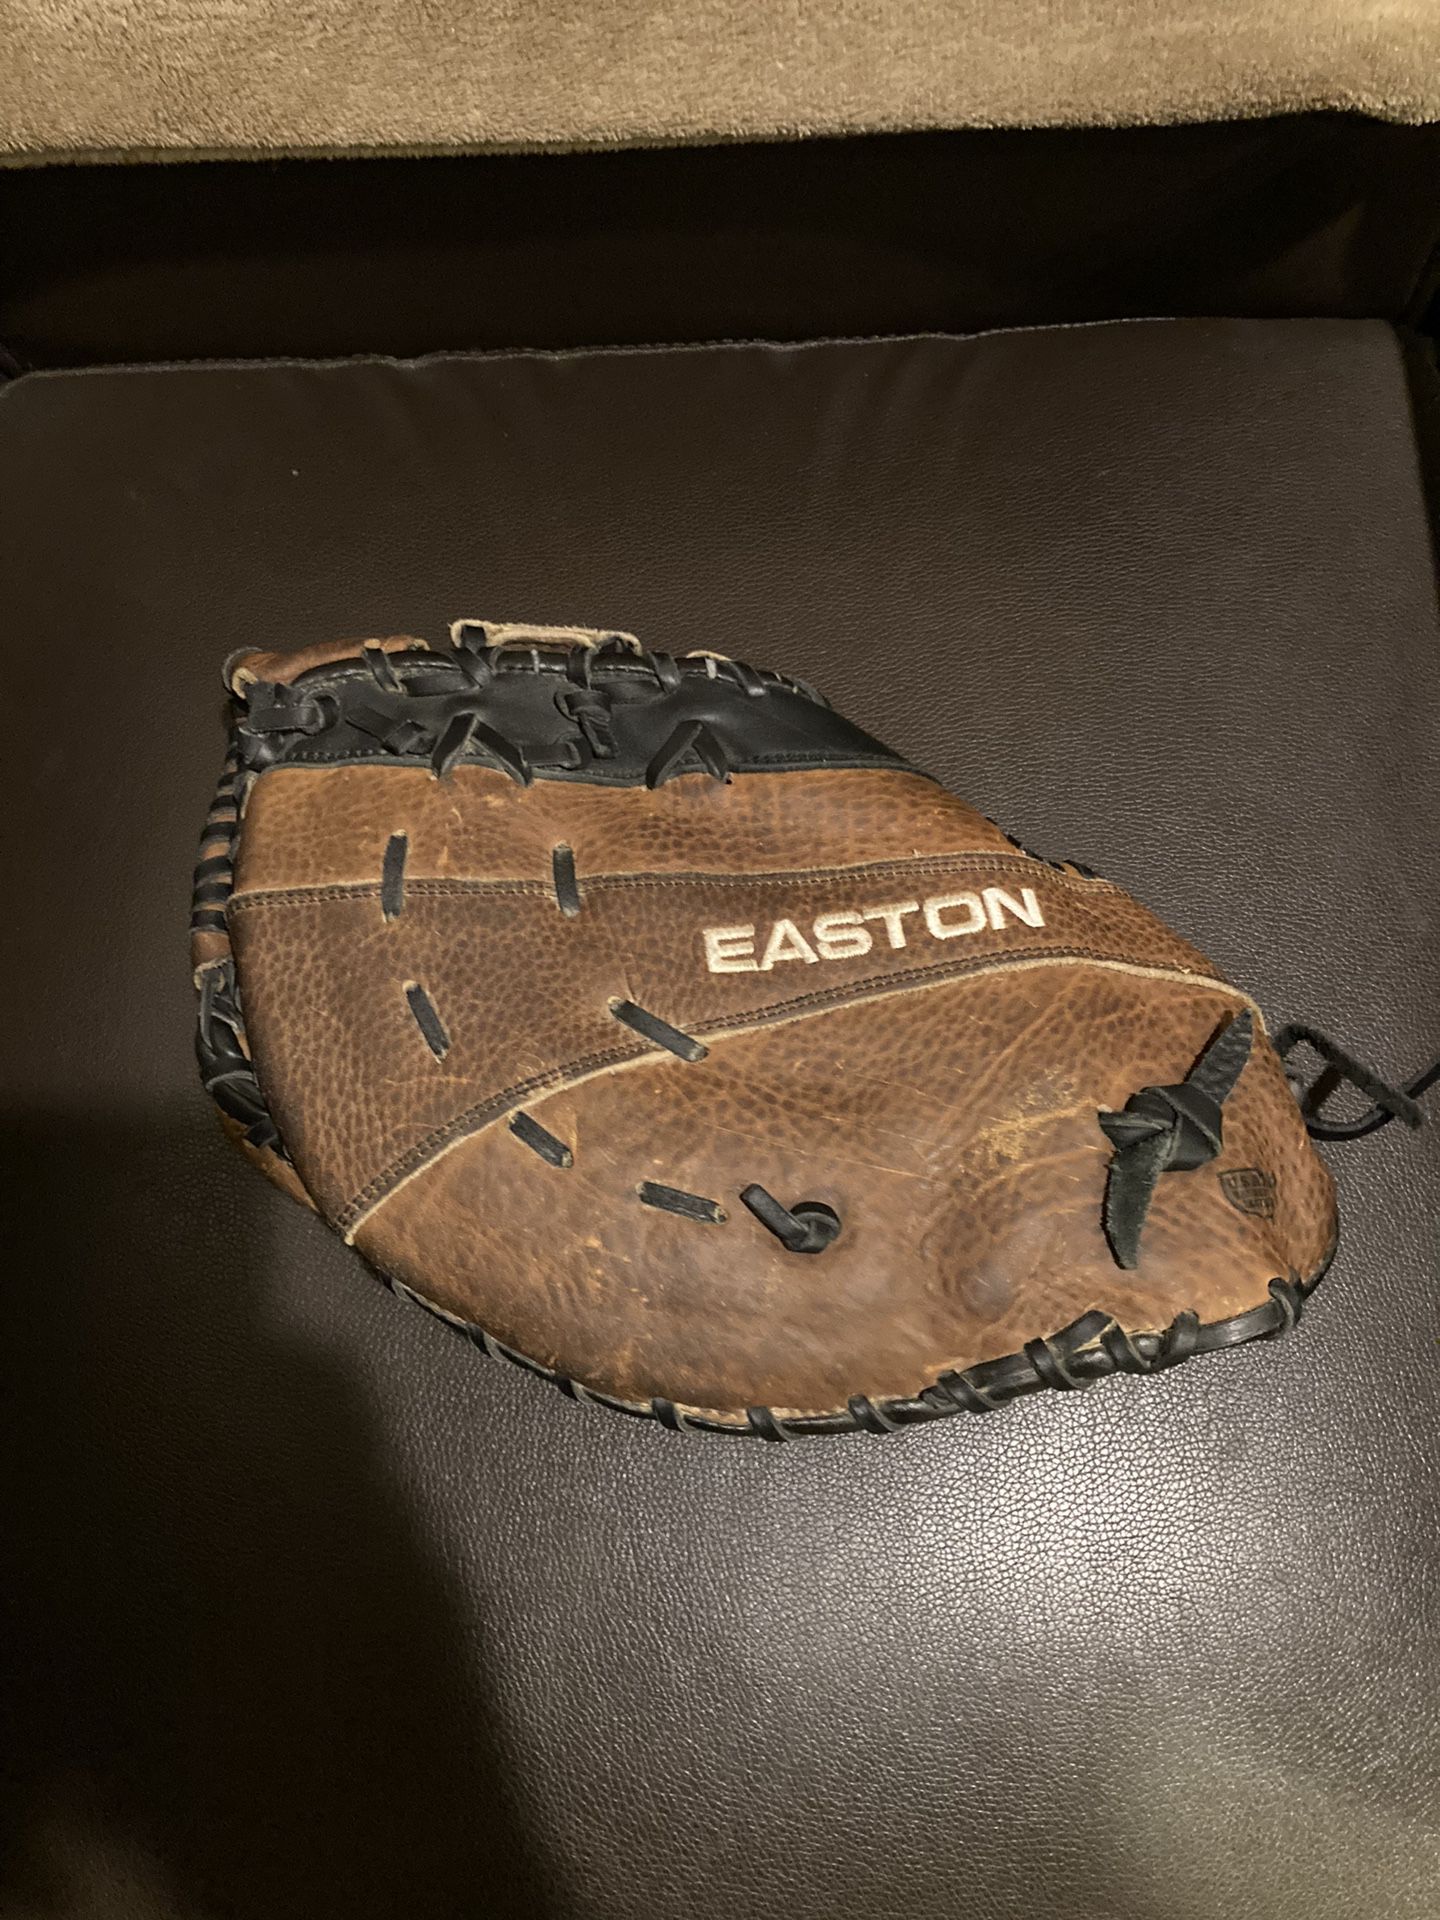 First Base Glove/ Baseball Glove 